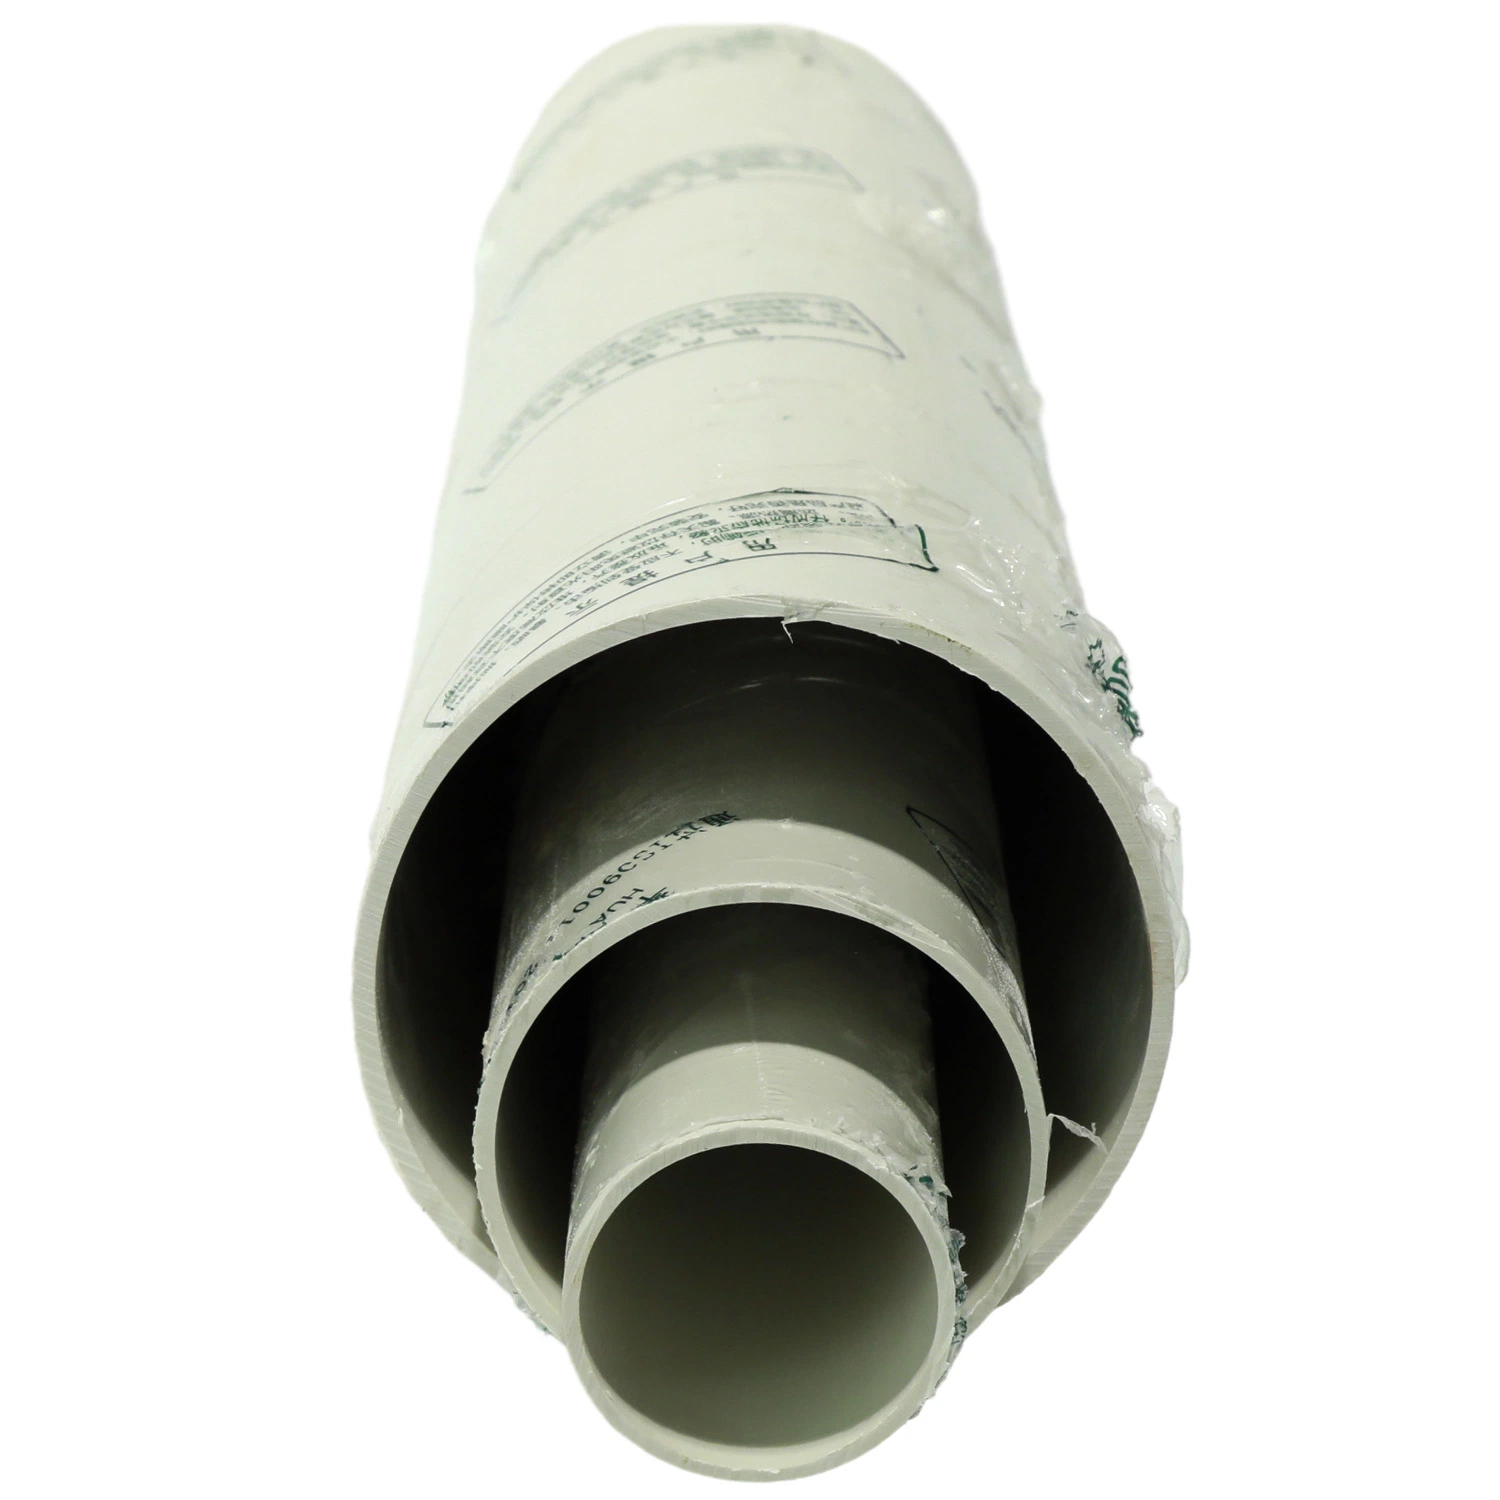 Conexión de caucho/pegamento tubería PVC/UPVC/MPVC tubo de agua tubo de PVC para agua Suministro/riego/drenaje de alcantarillas